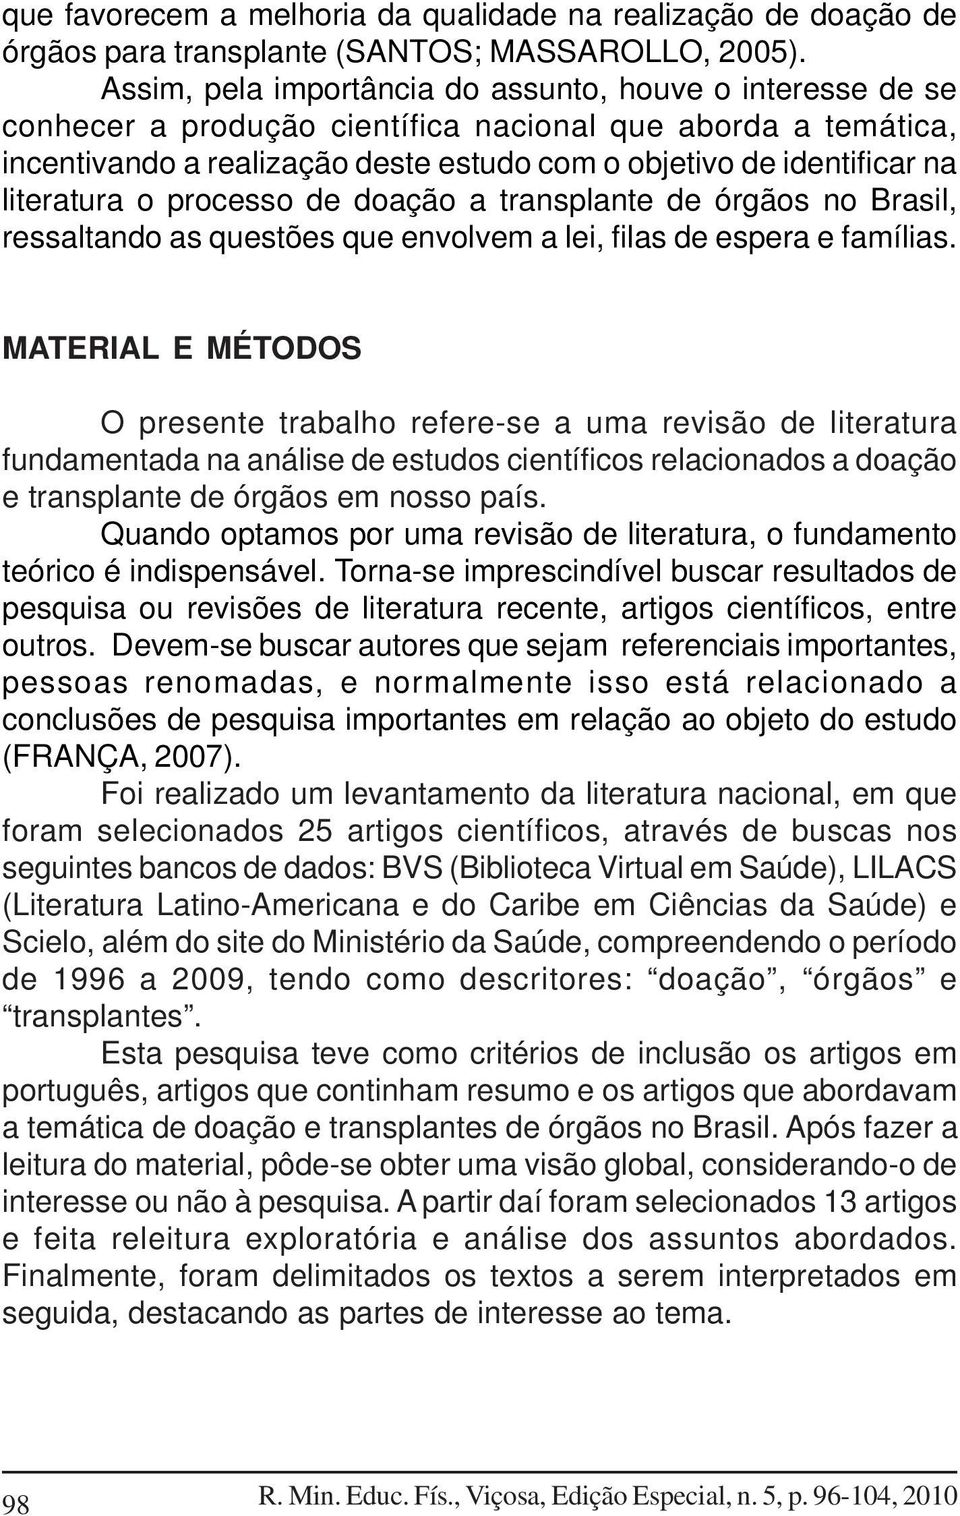 literatura o processo de doação a transplante de órgãos no Brasil, ressaltando as questões que envolvem a lei, filas de espera e famílias.